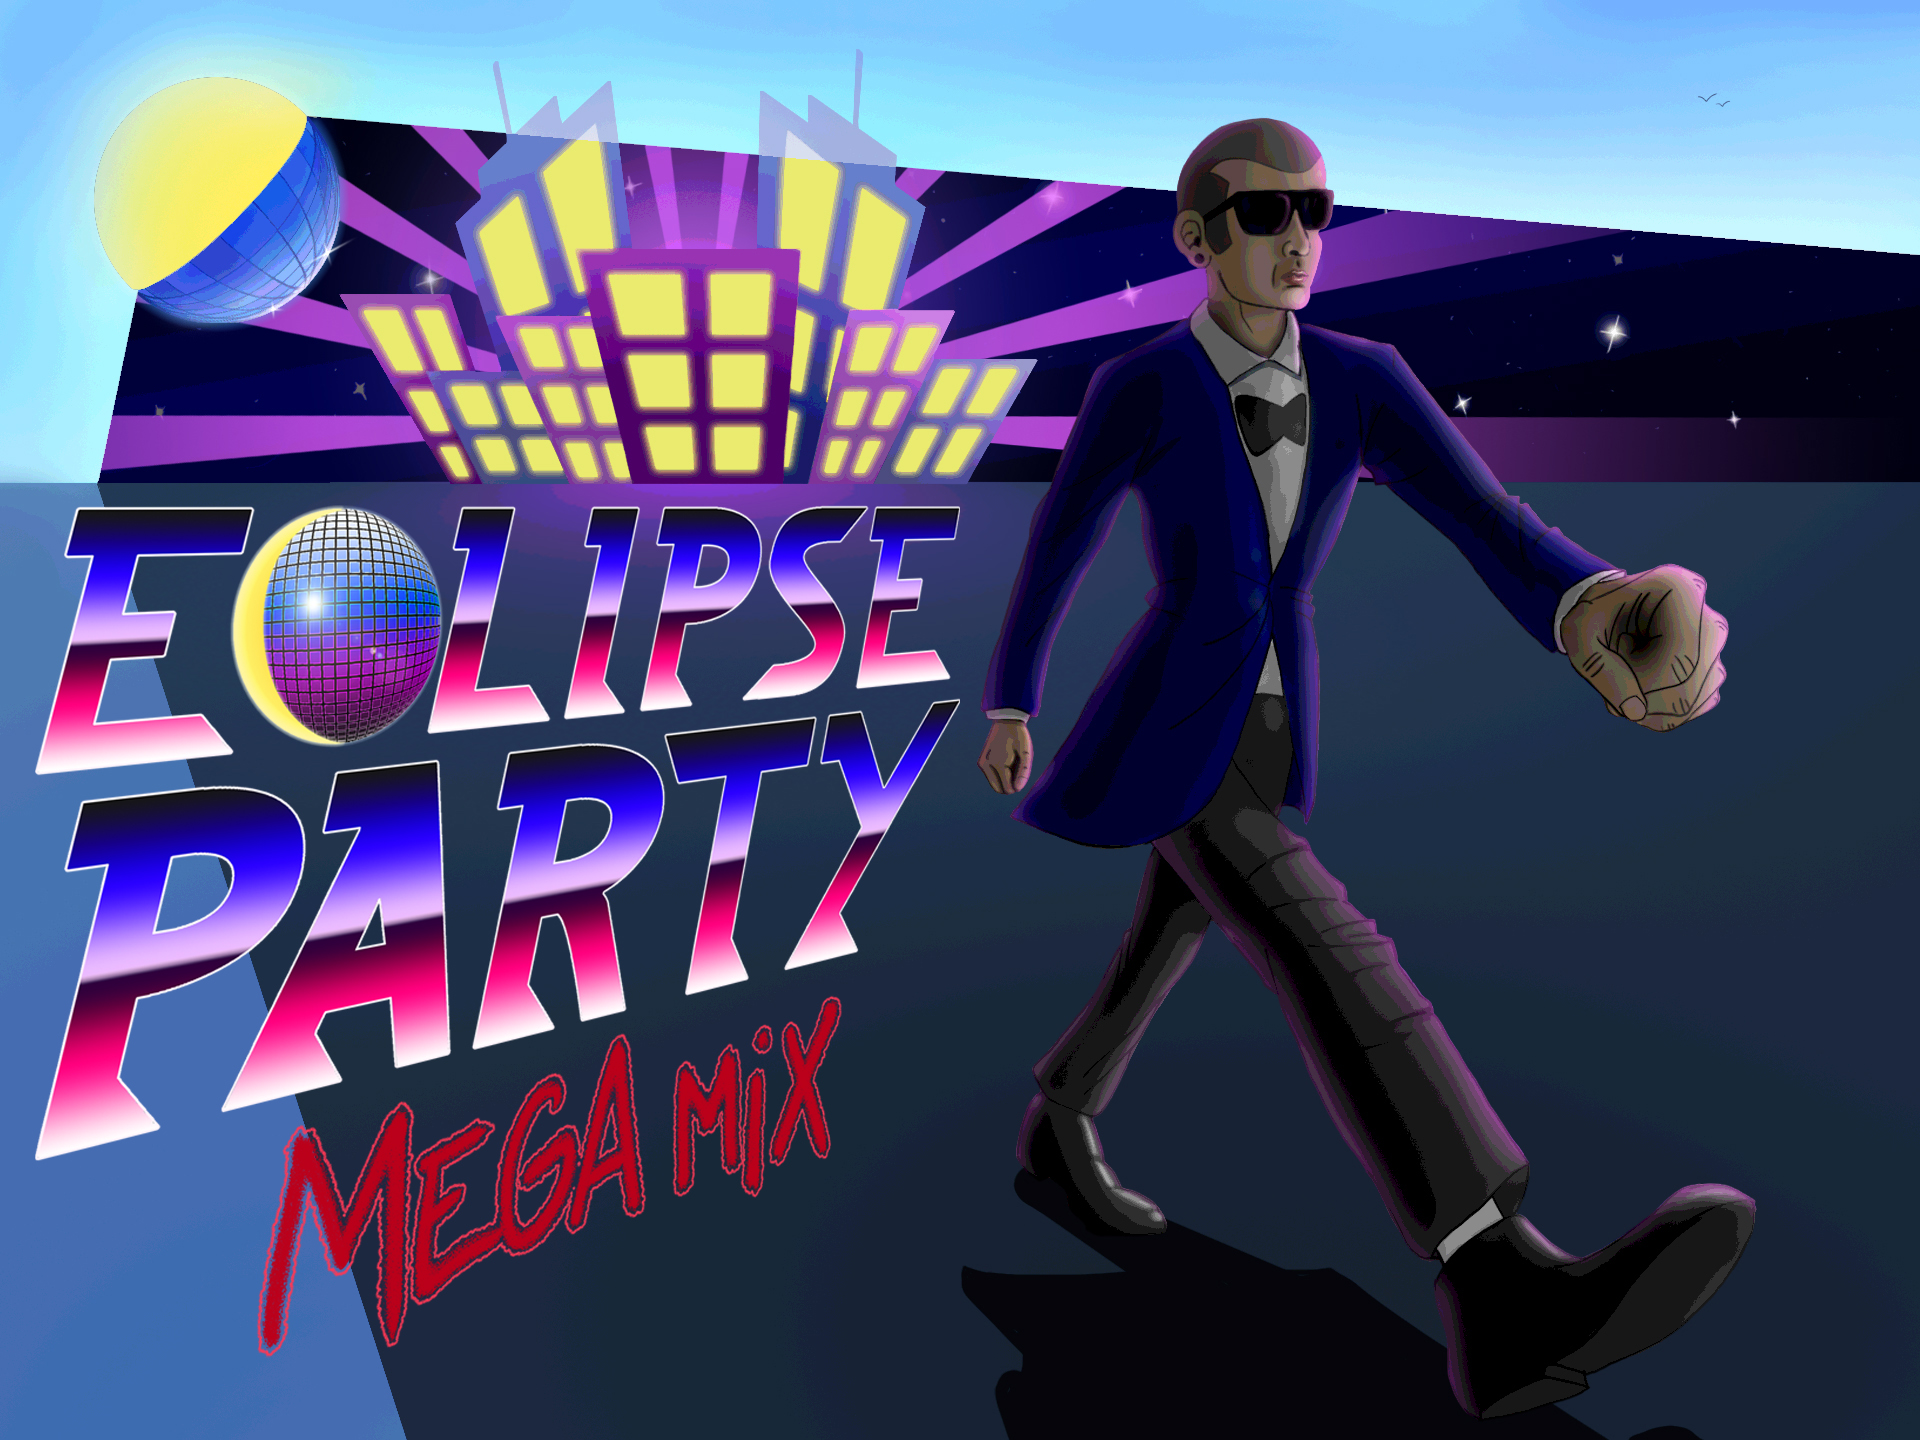 Eclipse Party Megamix